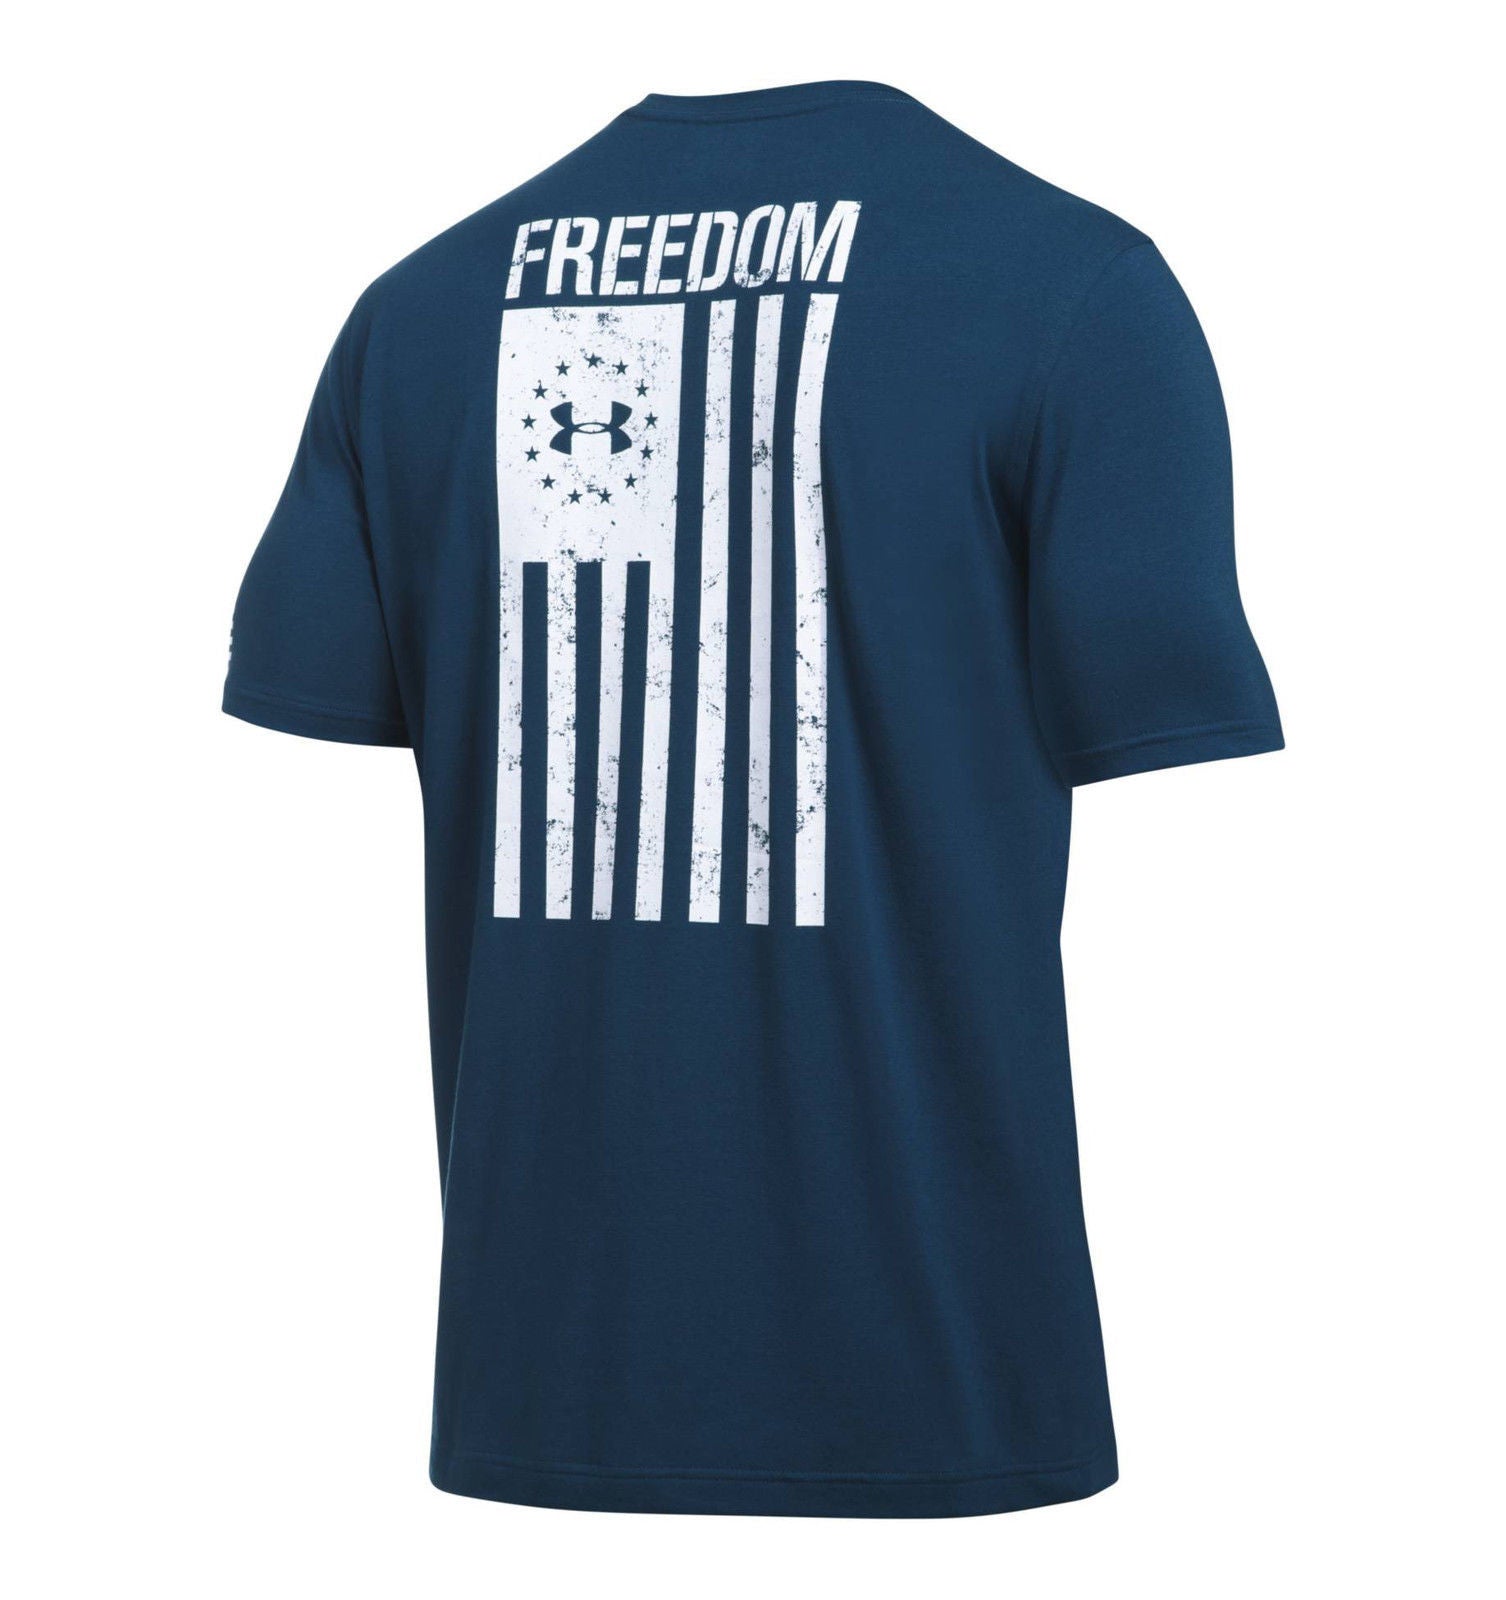 Under Armour Boys' UA Freedom Flag T-Shirt - Green - XL